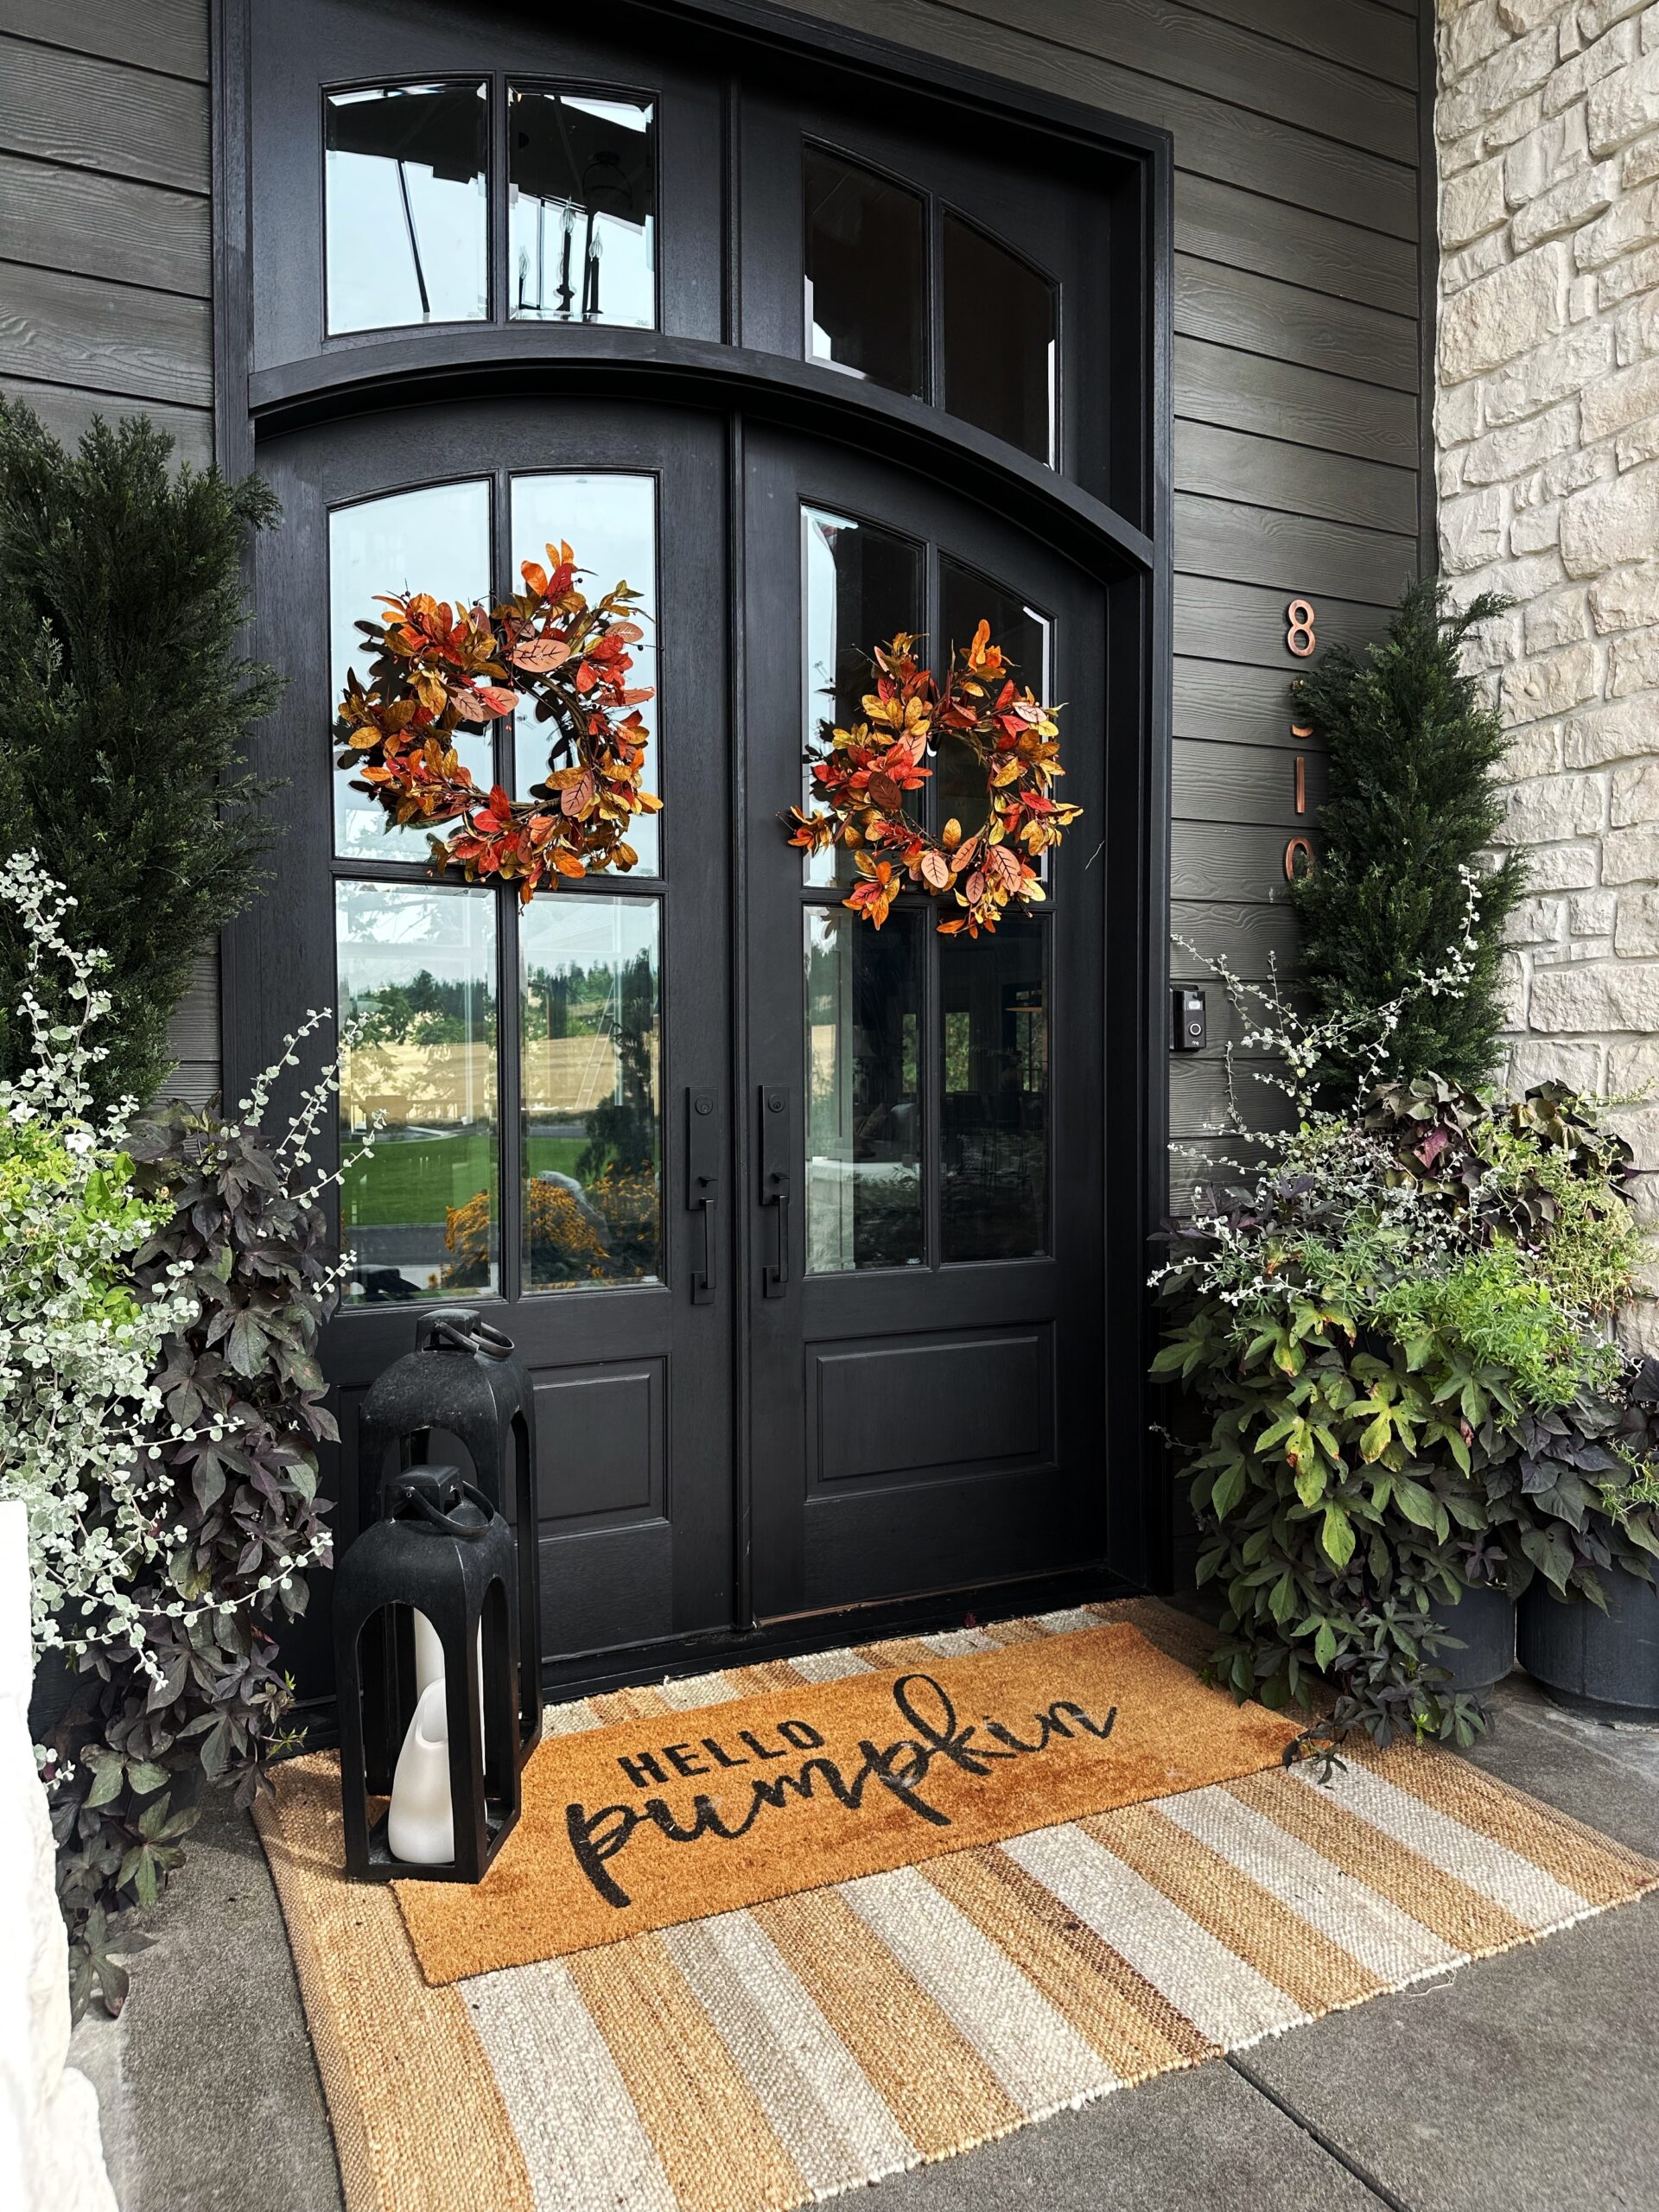 fall home edit my front porch | #fall #falldecor #home #homedecor #outdoordecor #fallwreath #wreath #frontdoor #planter #basket #welcomemat #hellofall #hellopumpkin